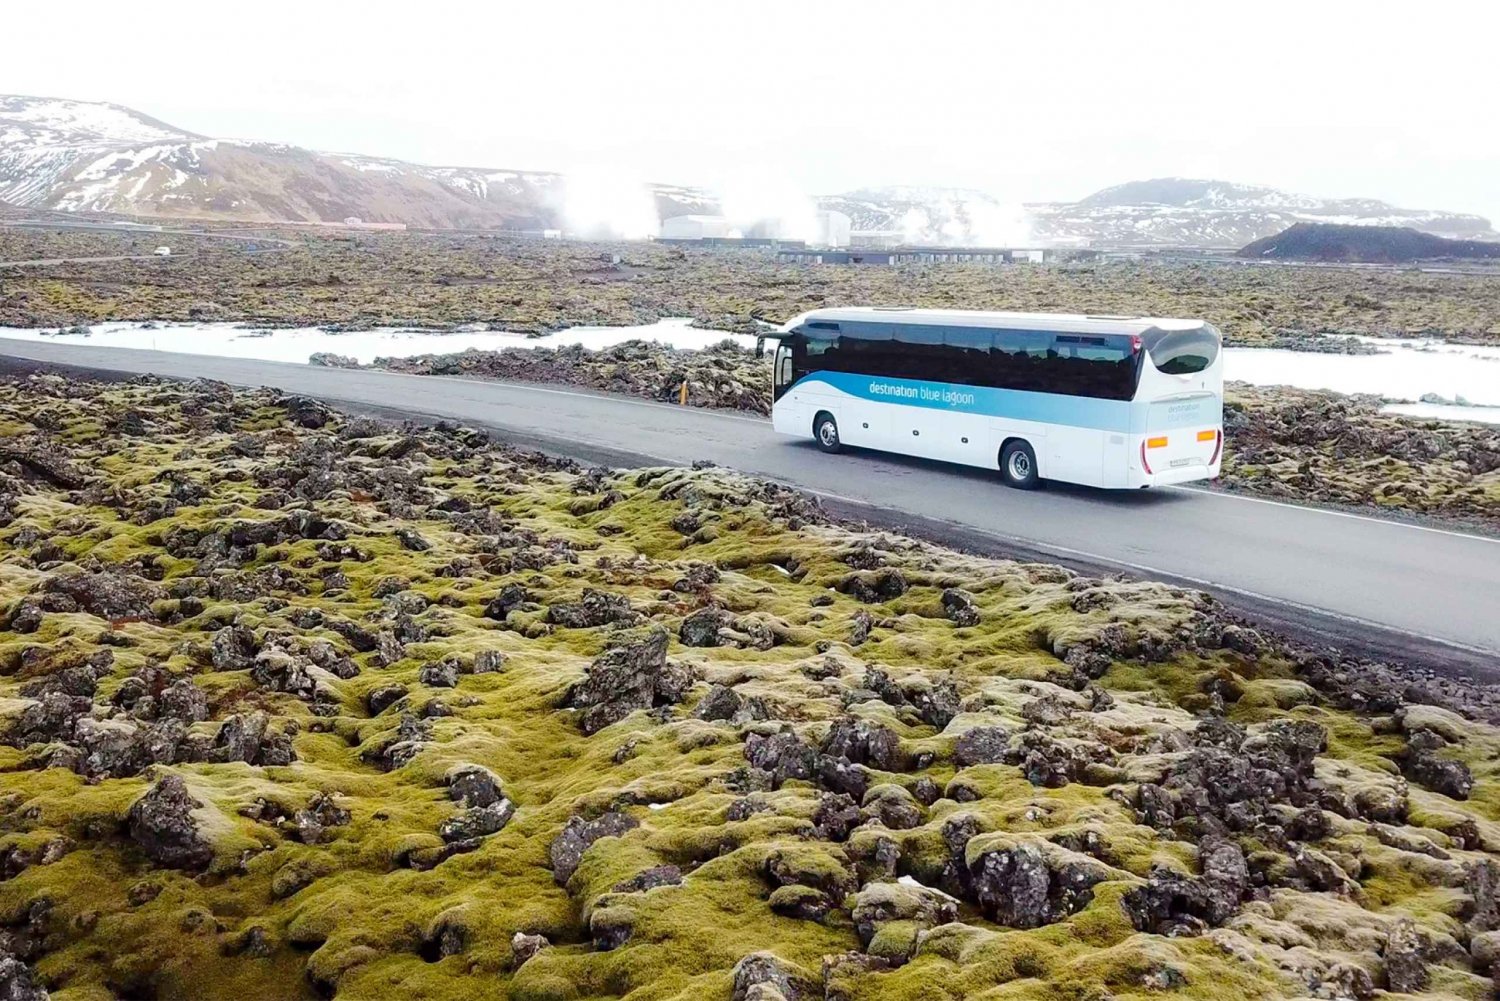 Z Reykjaviku lub Keflaviku: transport do Błękitnej Laguny